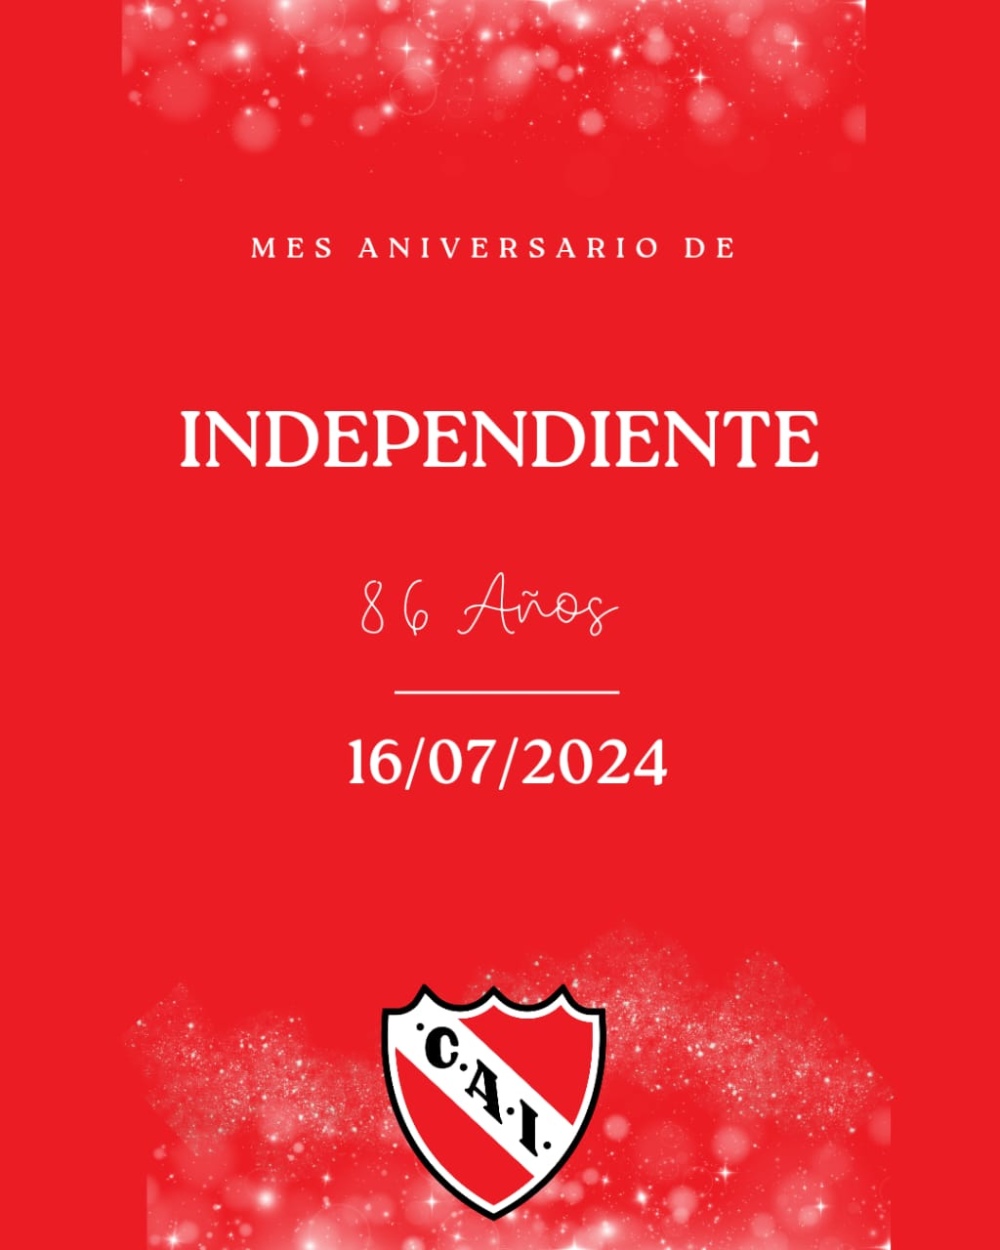 Independiente palpita el mes de su 86°aniversario